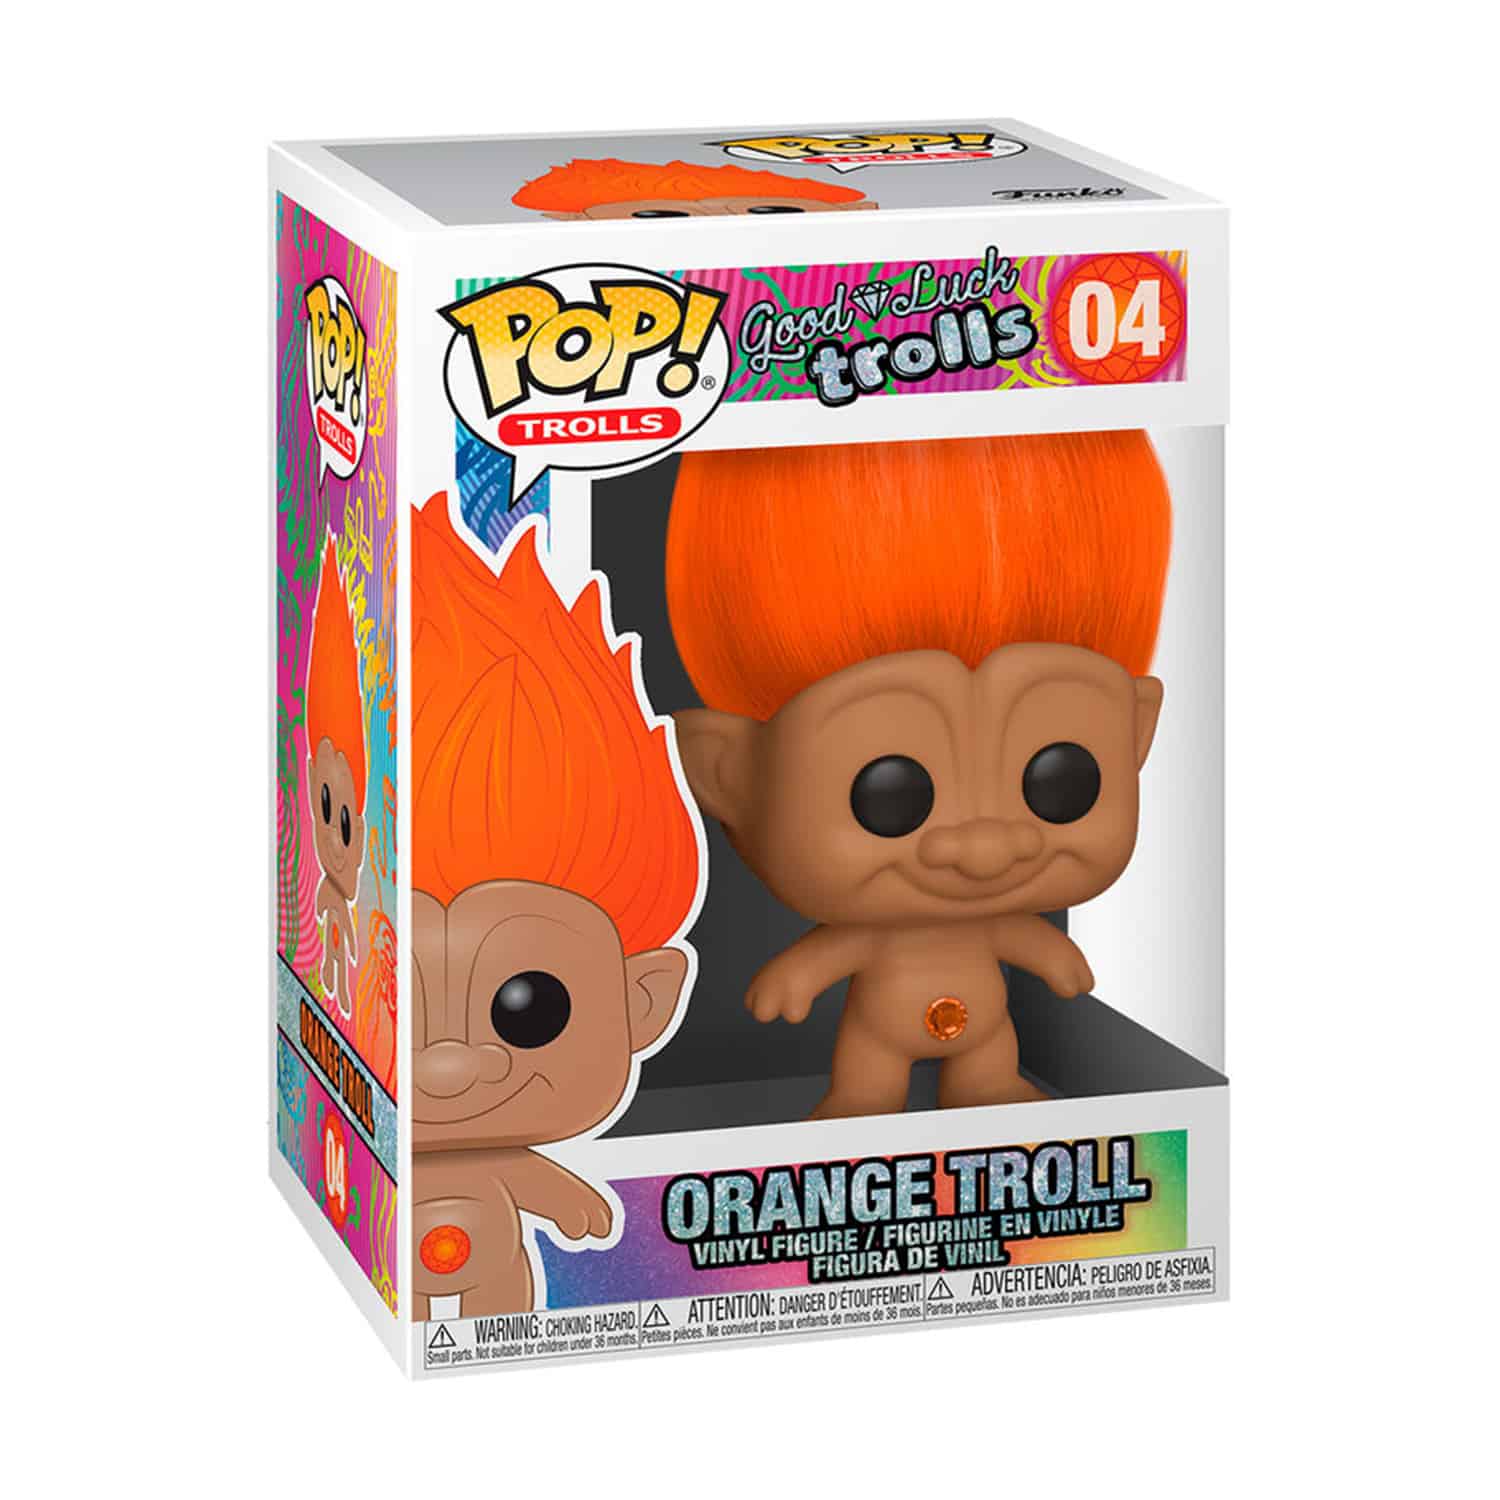 Trolls - Orange Troll Funko Pop!